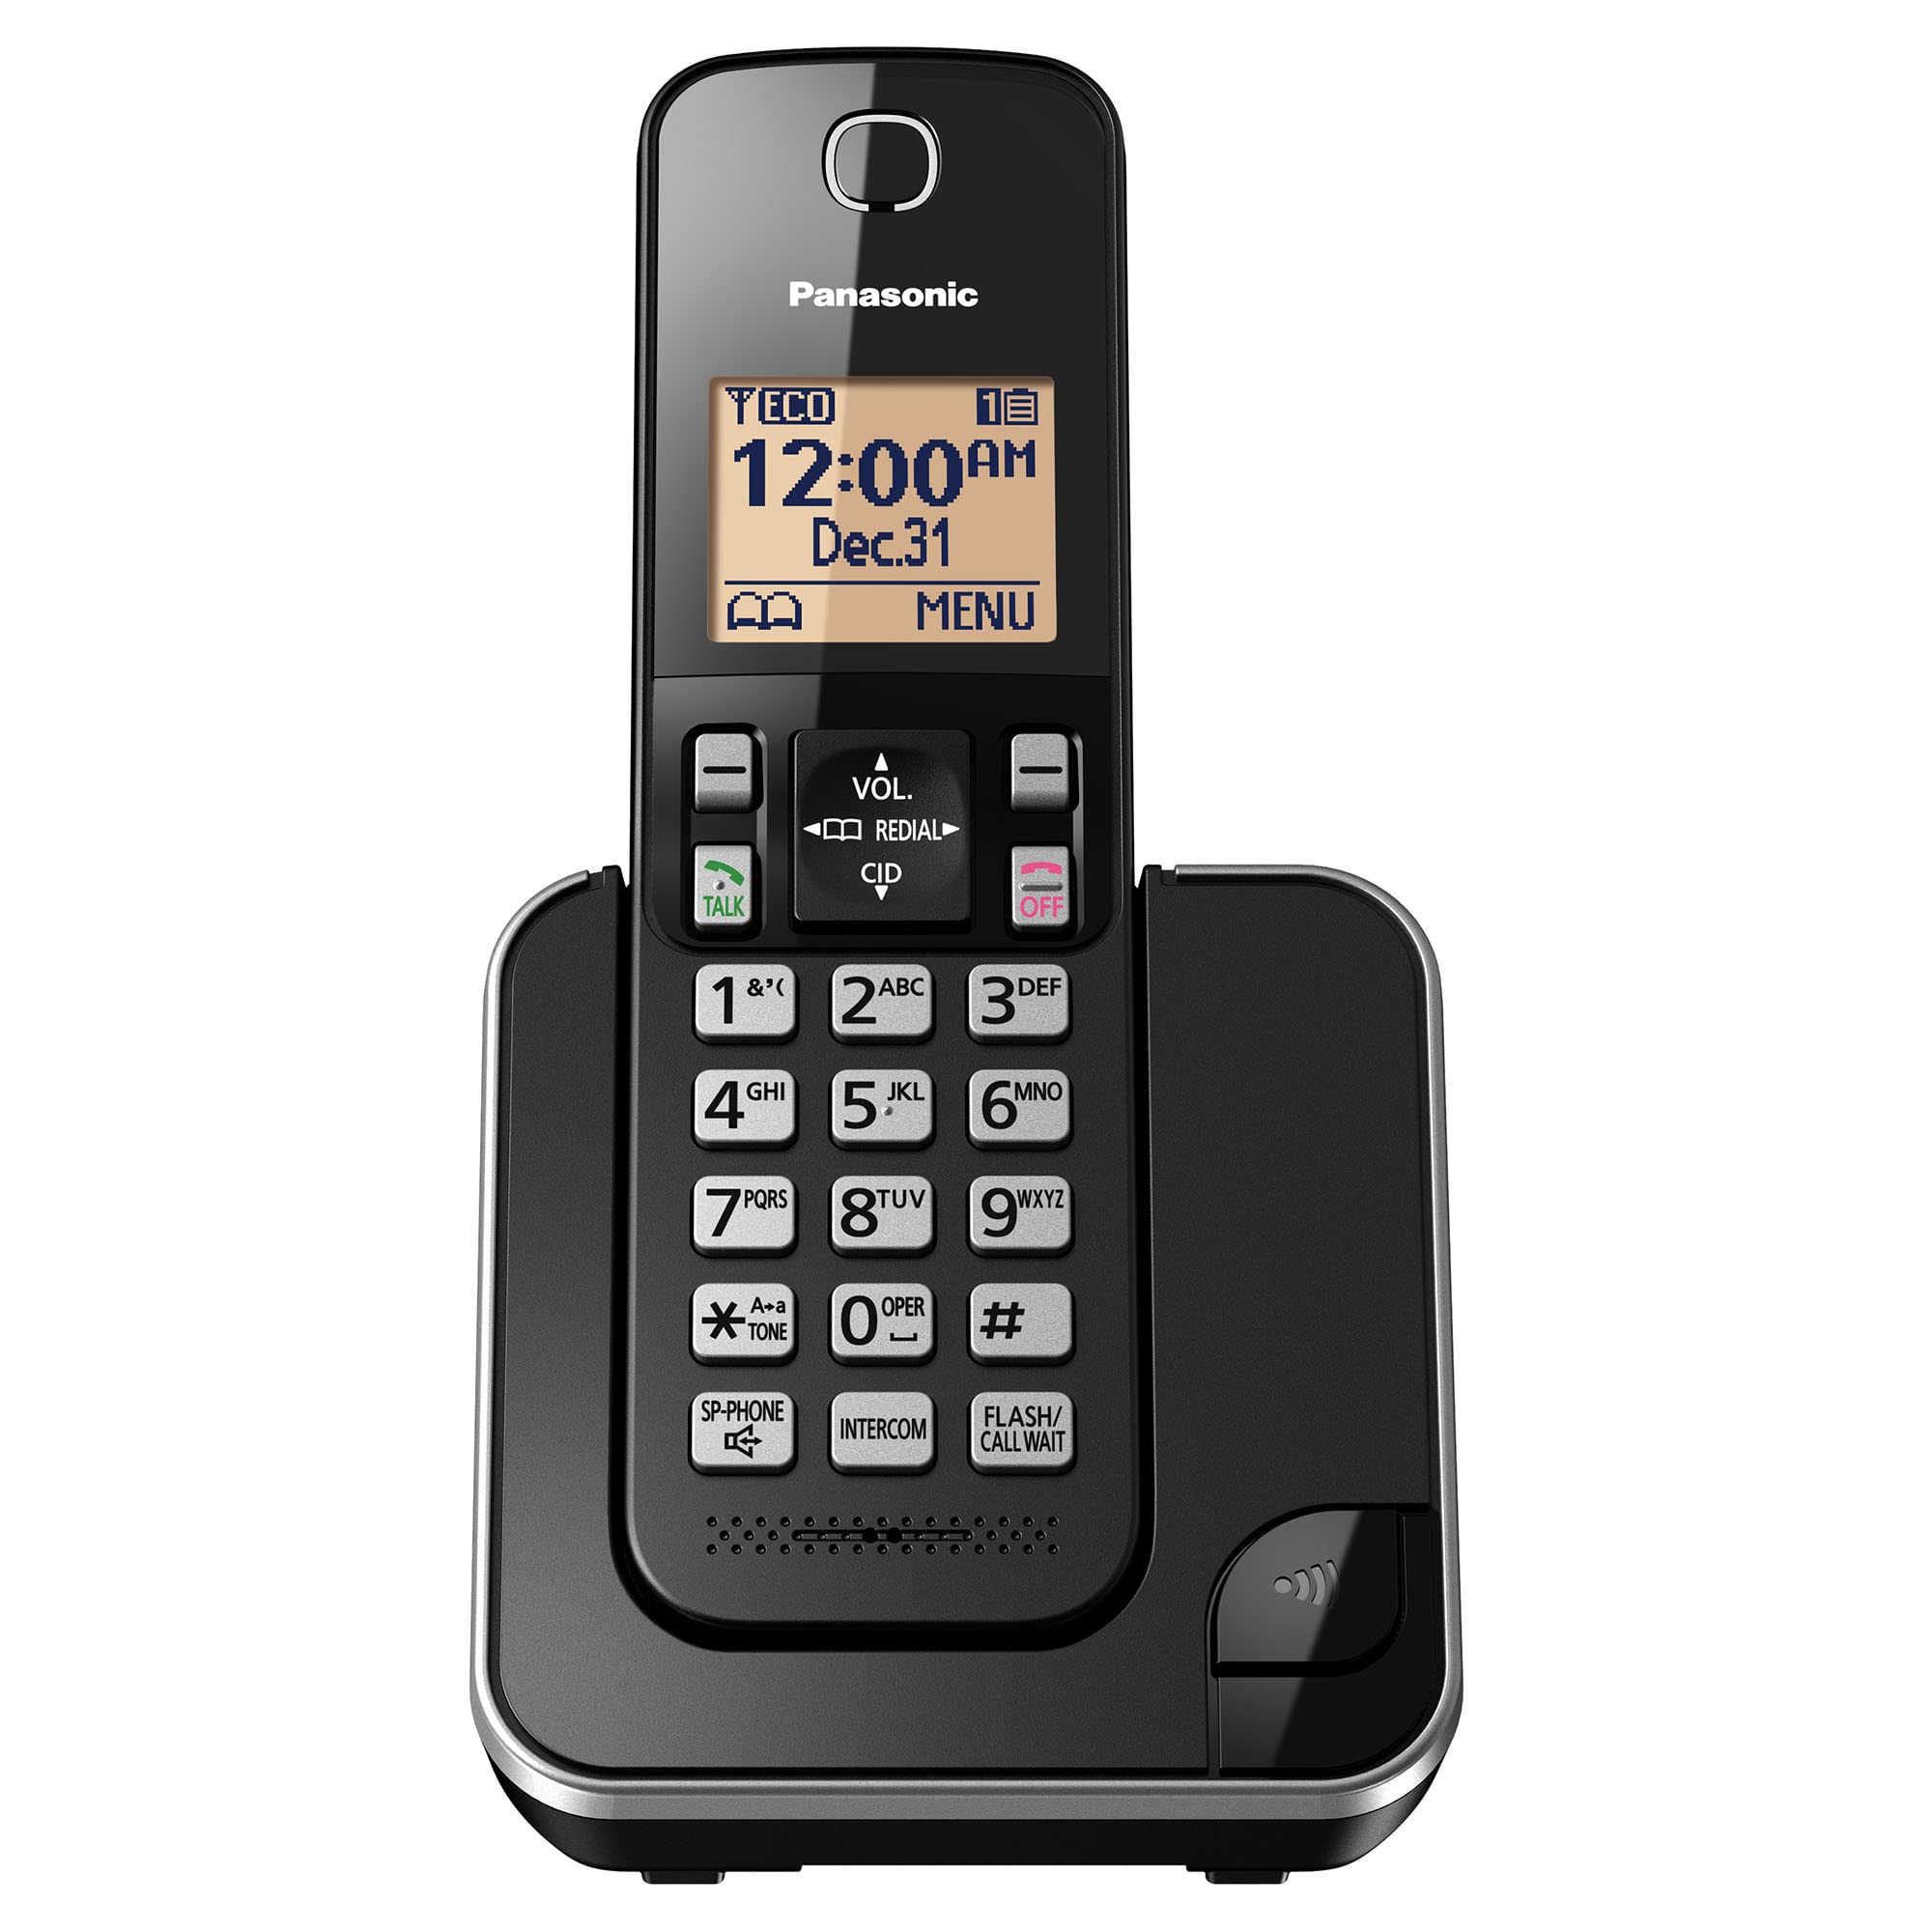  Panasonic एम्बर बैकलिट डिस्प्ले और कॉल ब्लॉक के साथ विस्तार योग्य ताररहित फोन प्र...